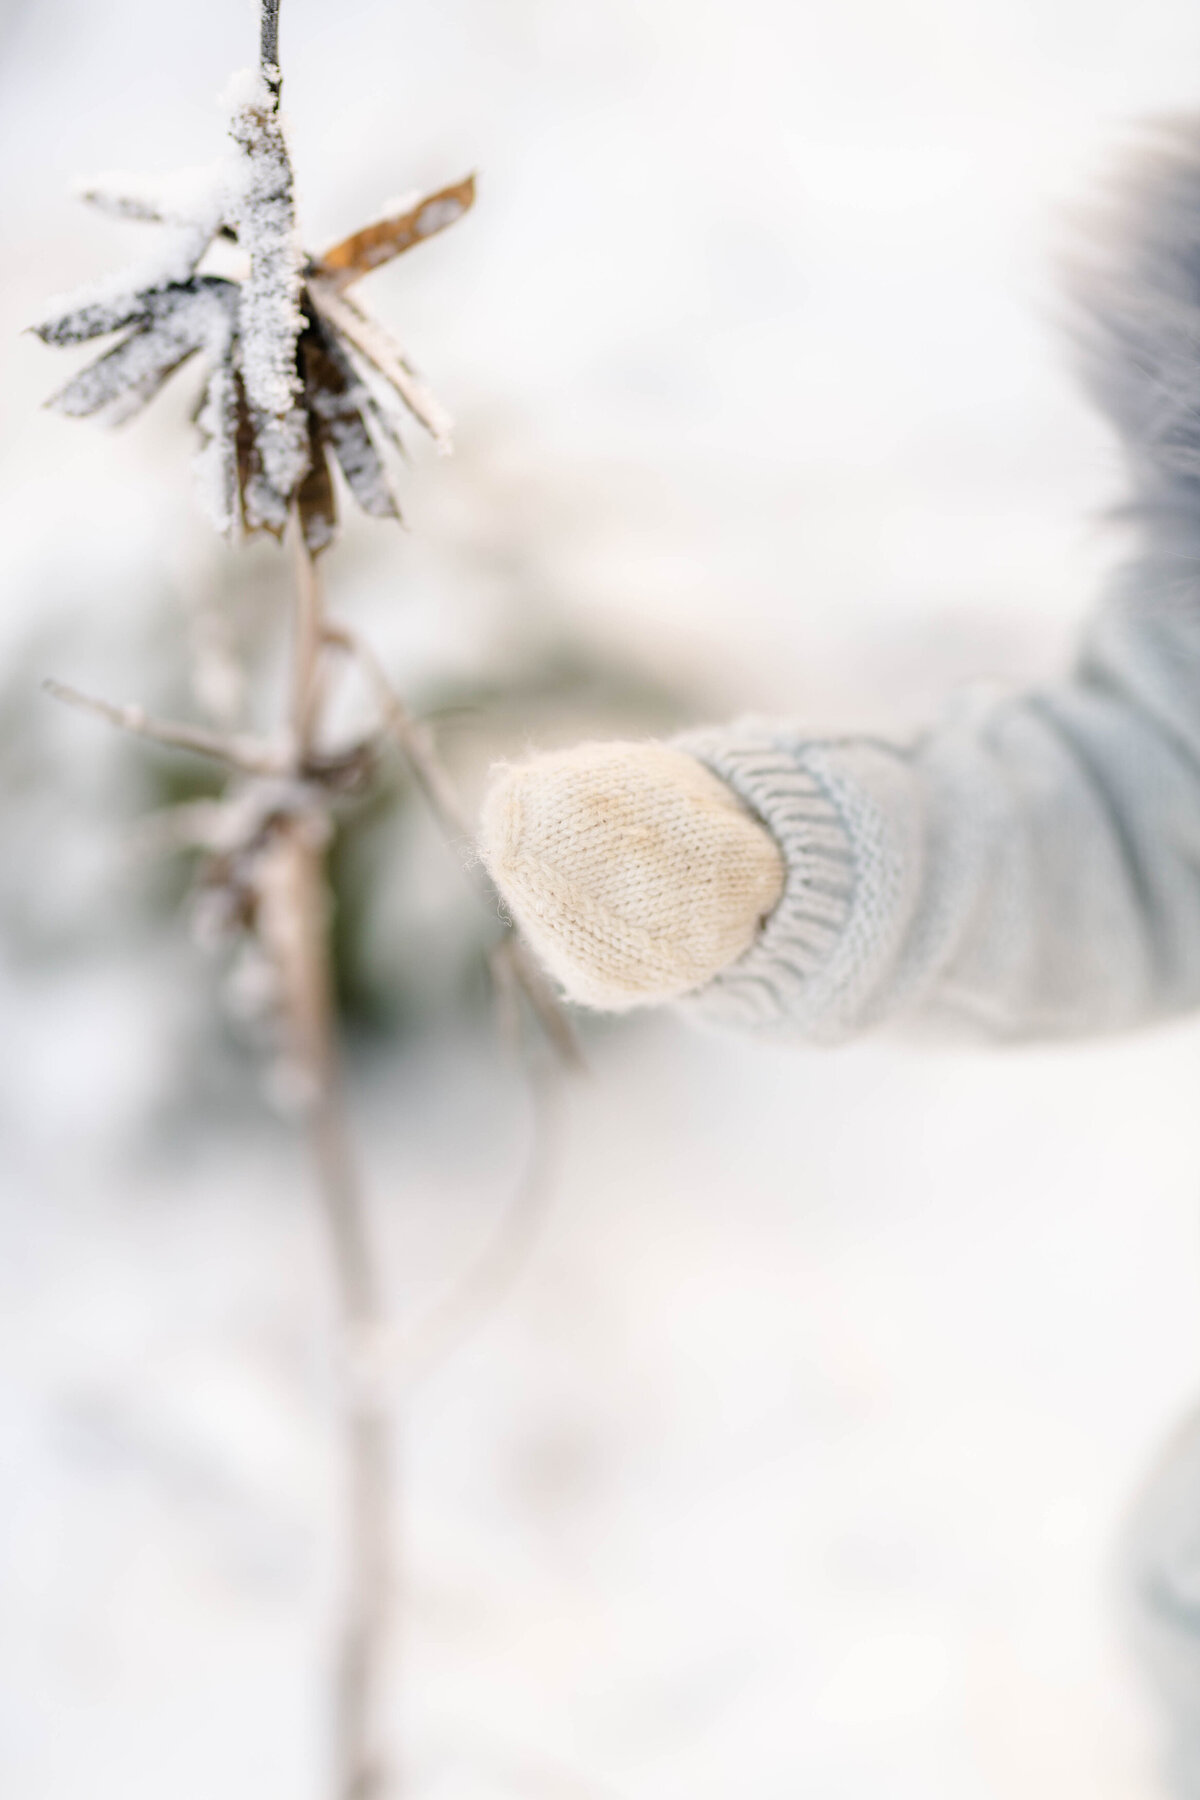 Barnfotografering i snö, Gislaved